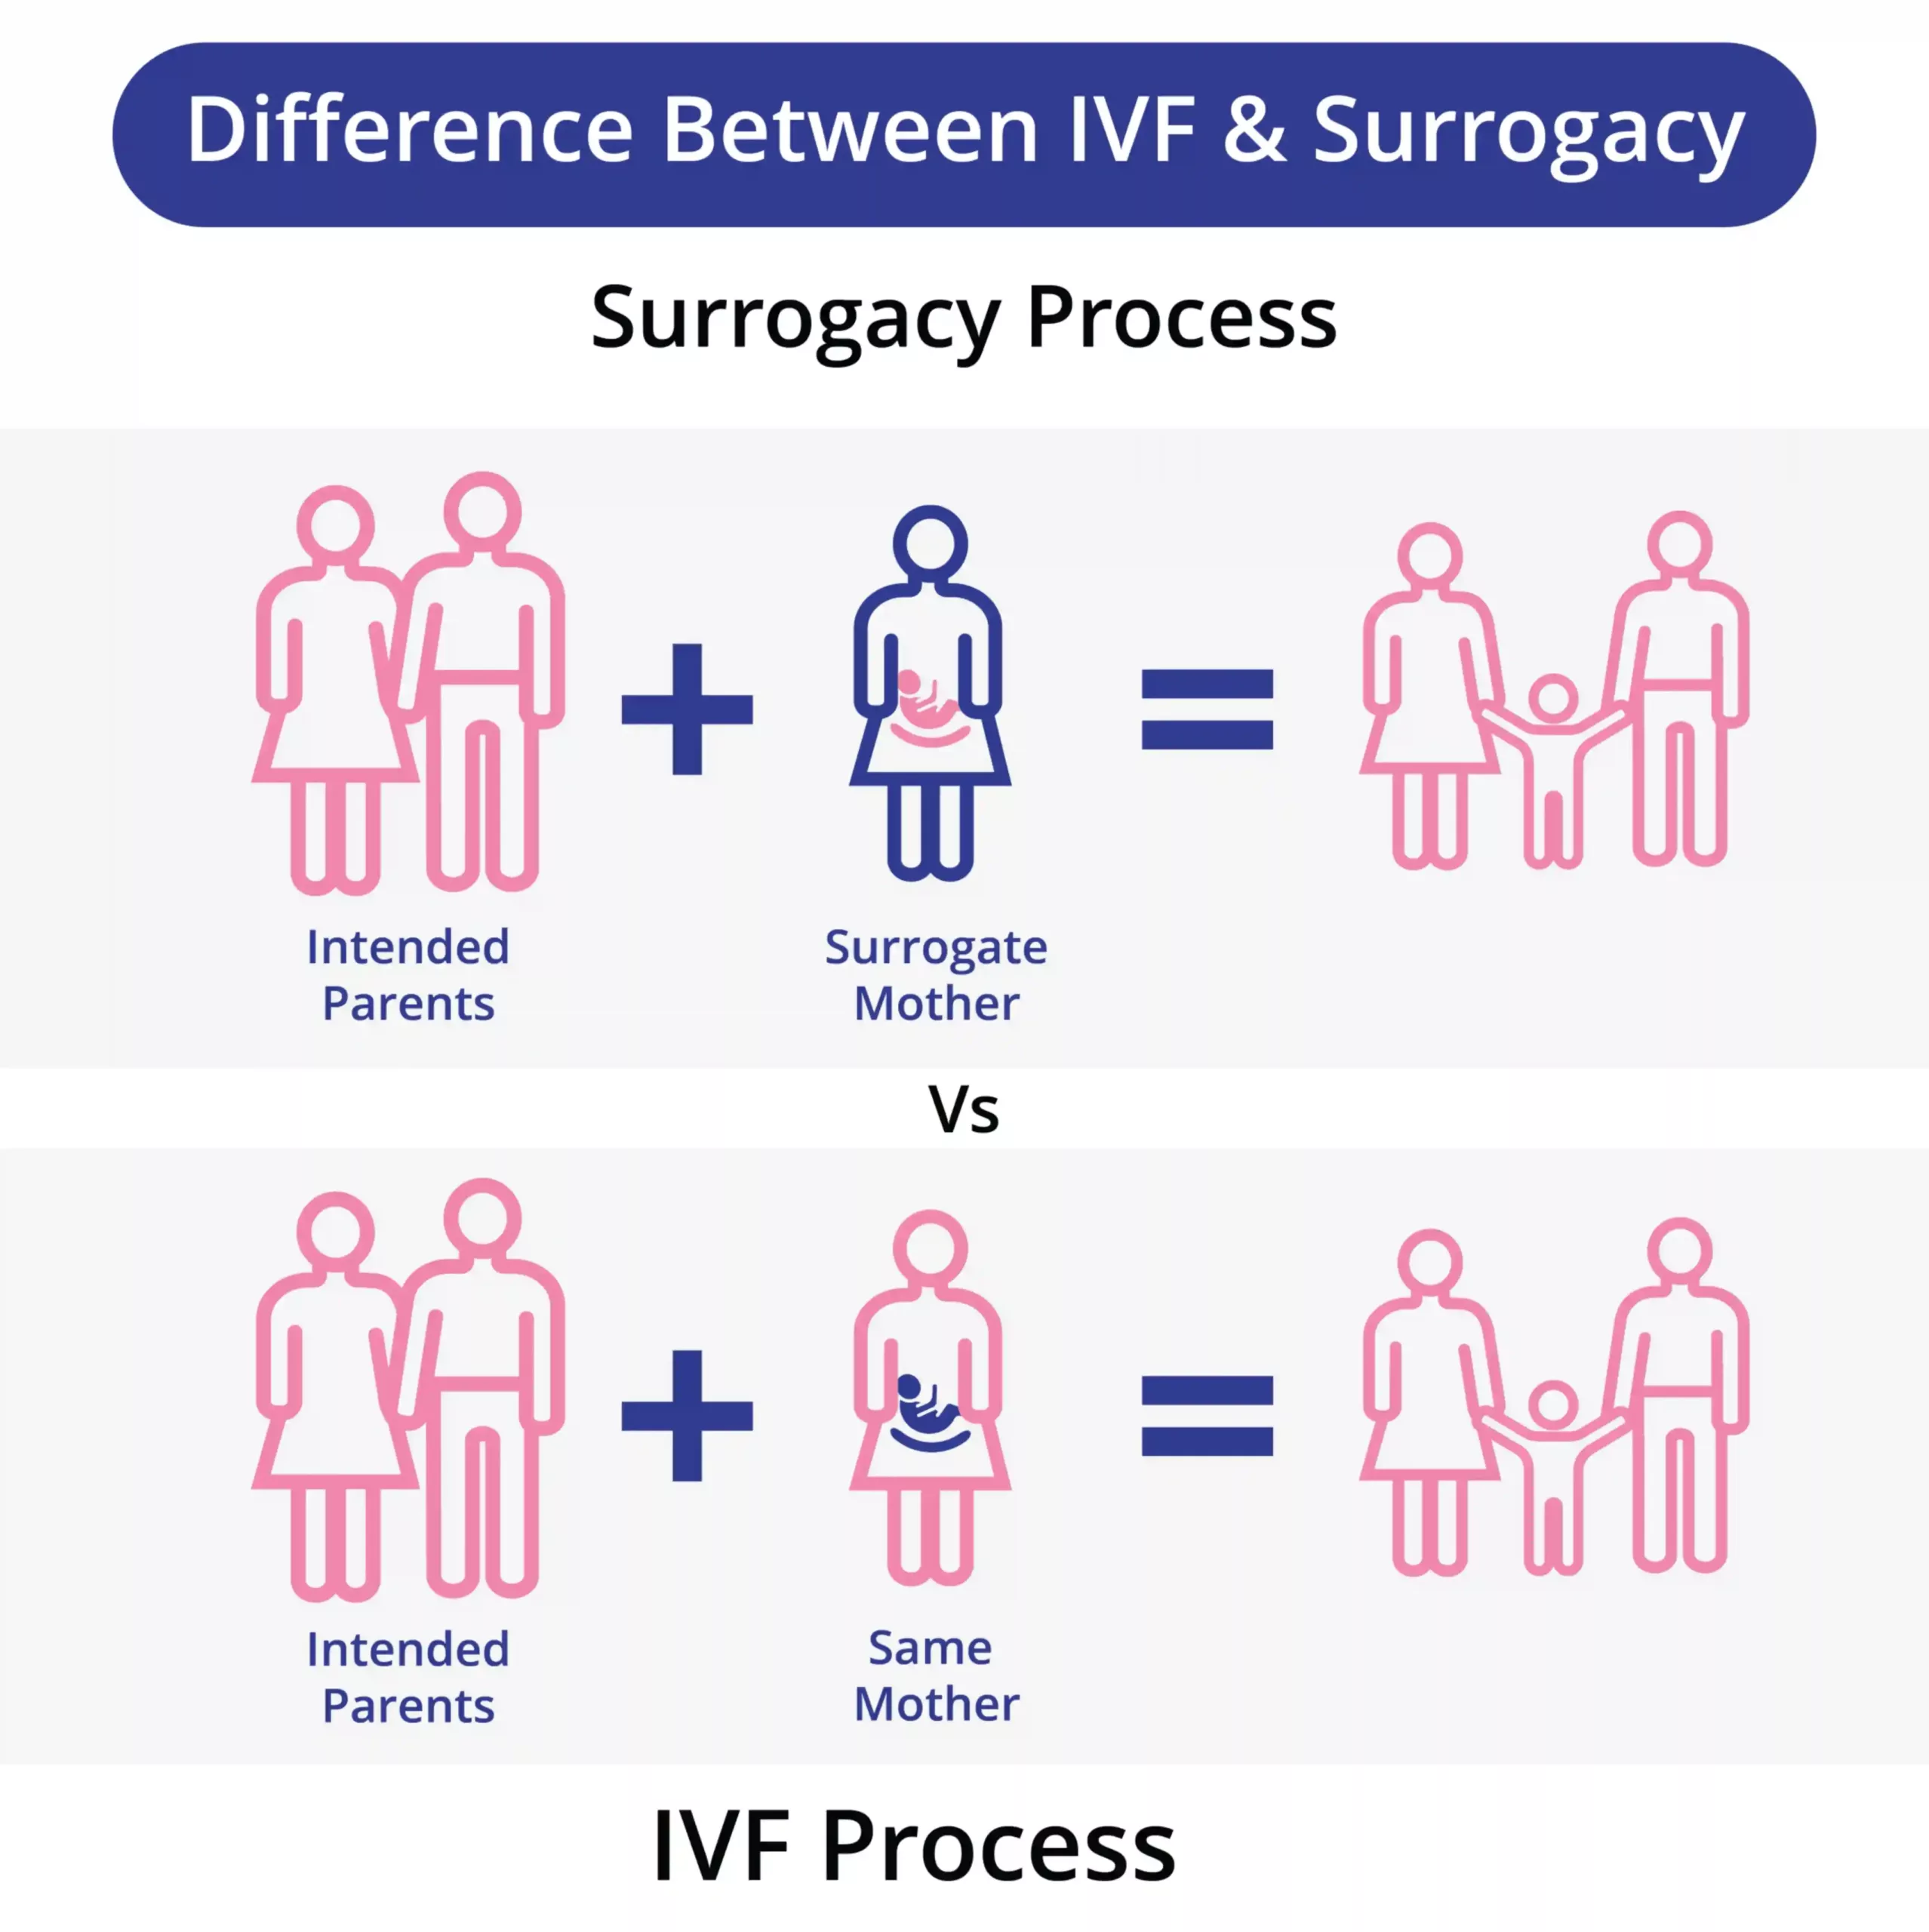 IVF Vs വാടക ഗർഭധാരണം